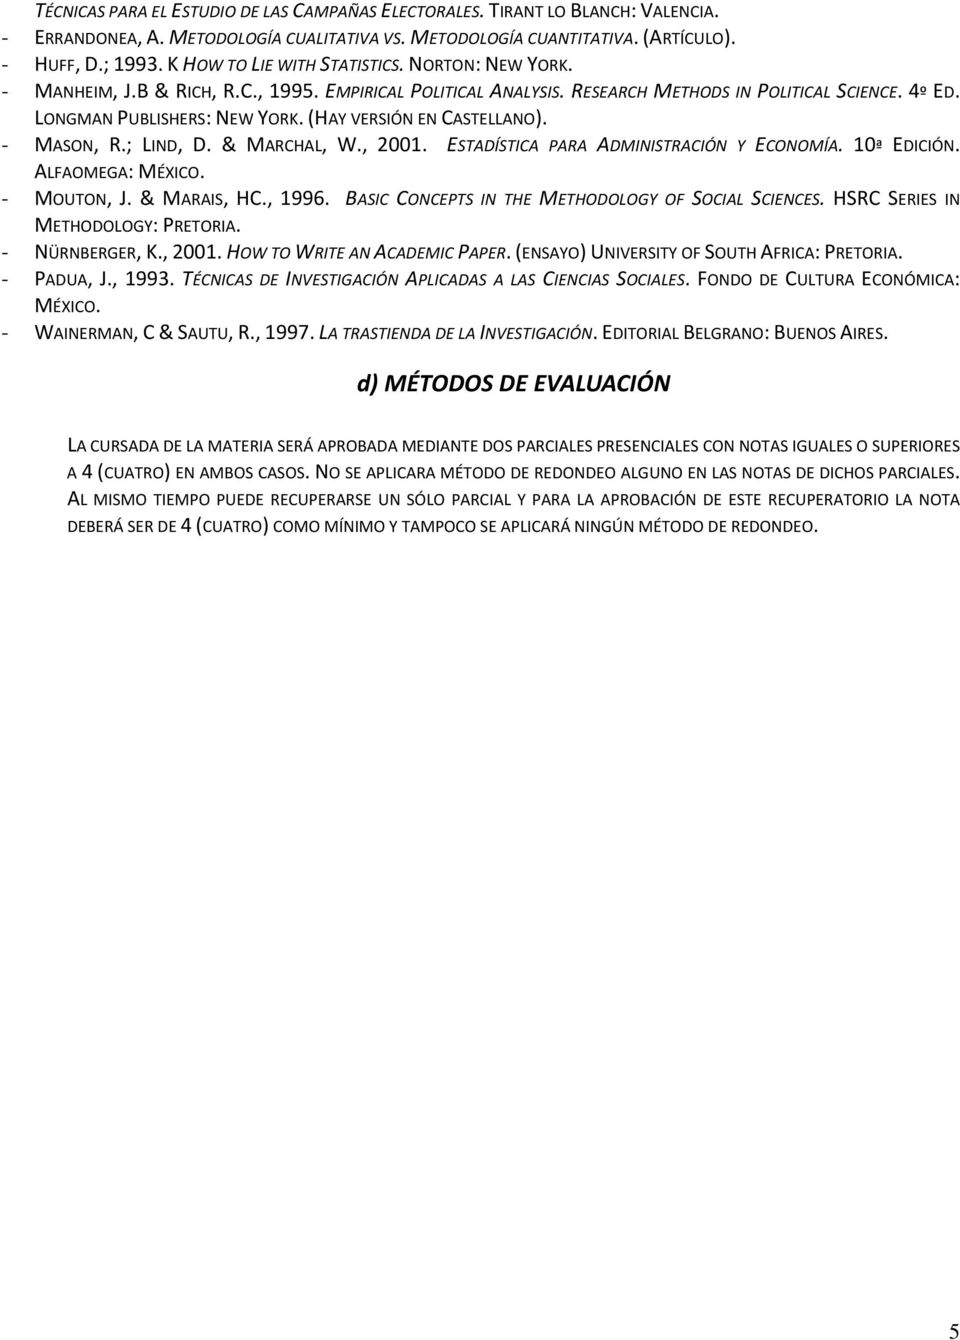 (HAY VERSIÓN EN CASTELLANO). - MASON, R.; LIND, D. & MARCHAL, W., 2001. ESTADÍSTICA PARA ADMINISTRACIÓN Y ECONOMÍA. 10ª EDICIÓN. ALFAOMEGA: MÉXICO. - MOUTON, J. & MARAIS, HC., 1996.